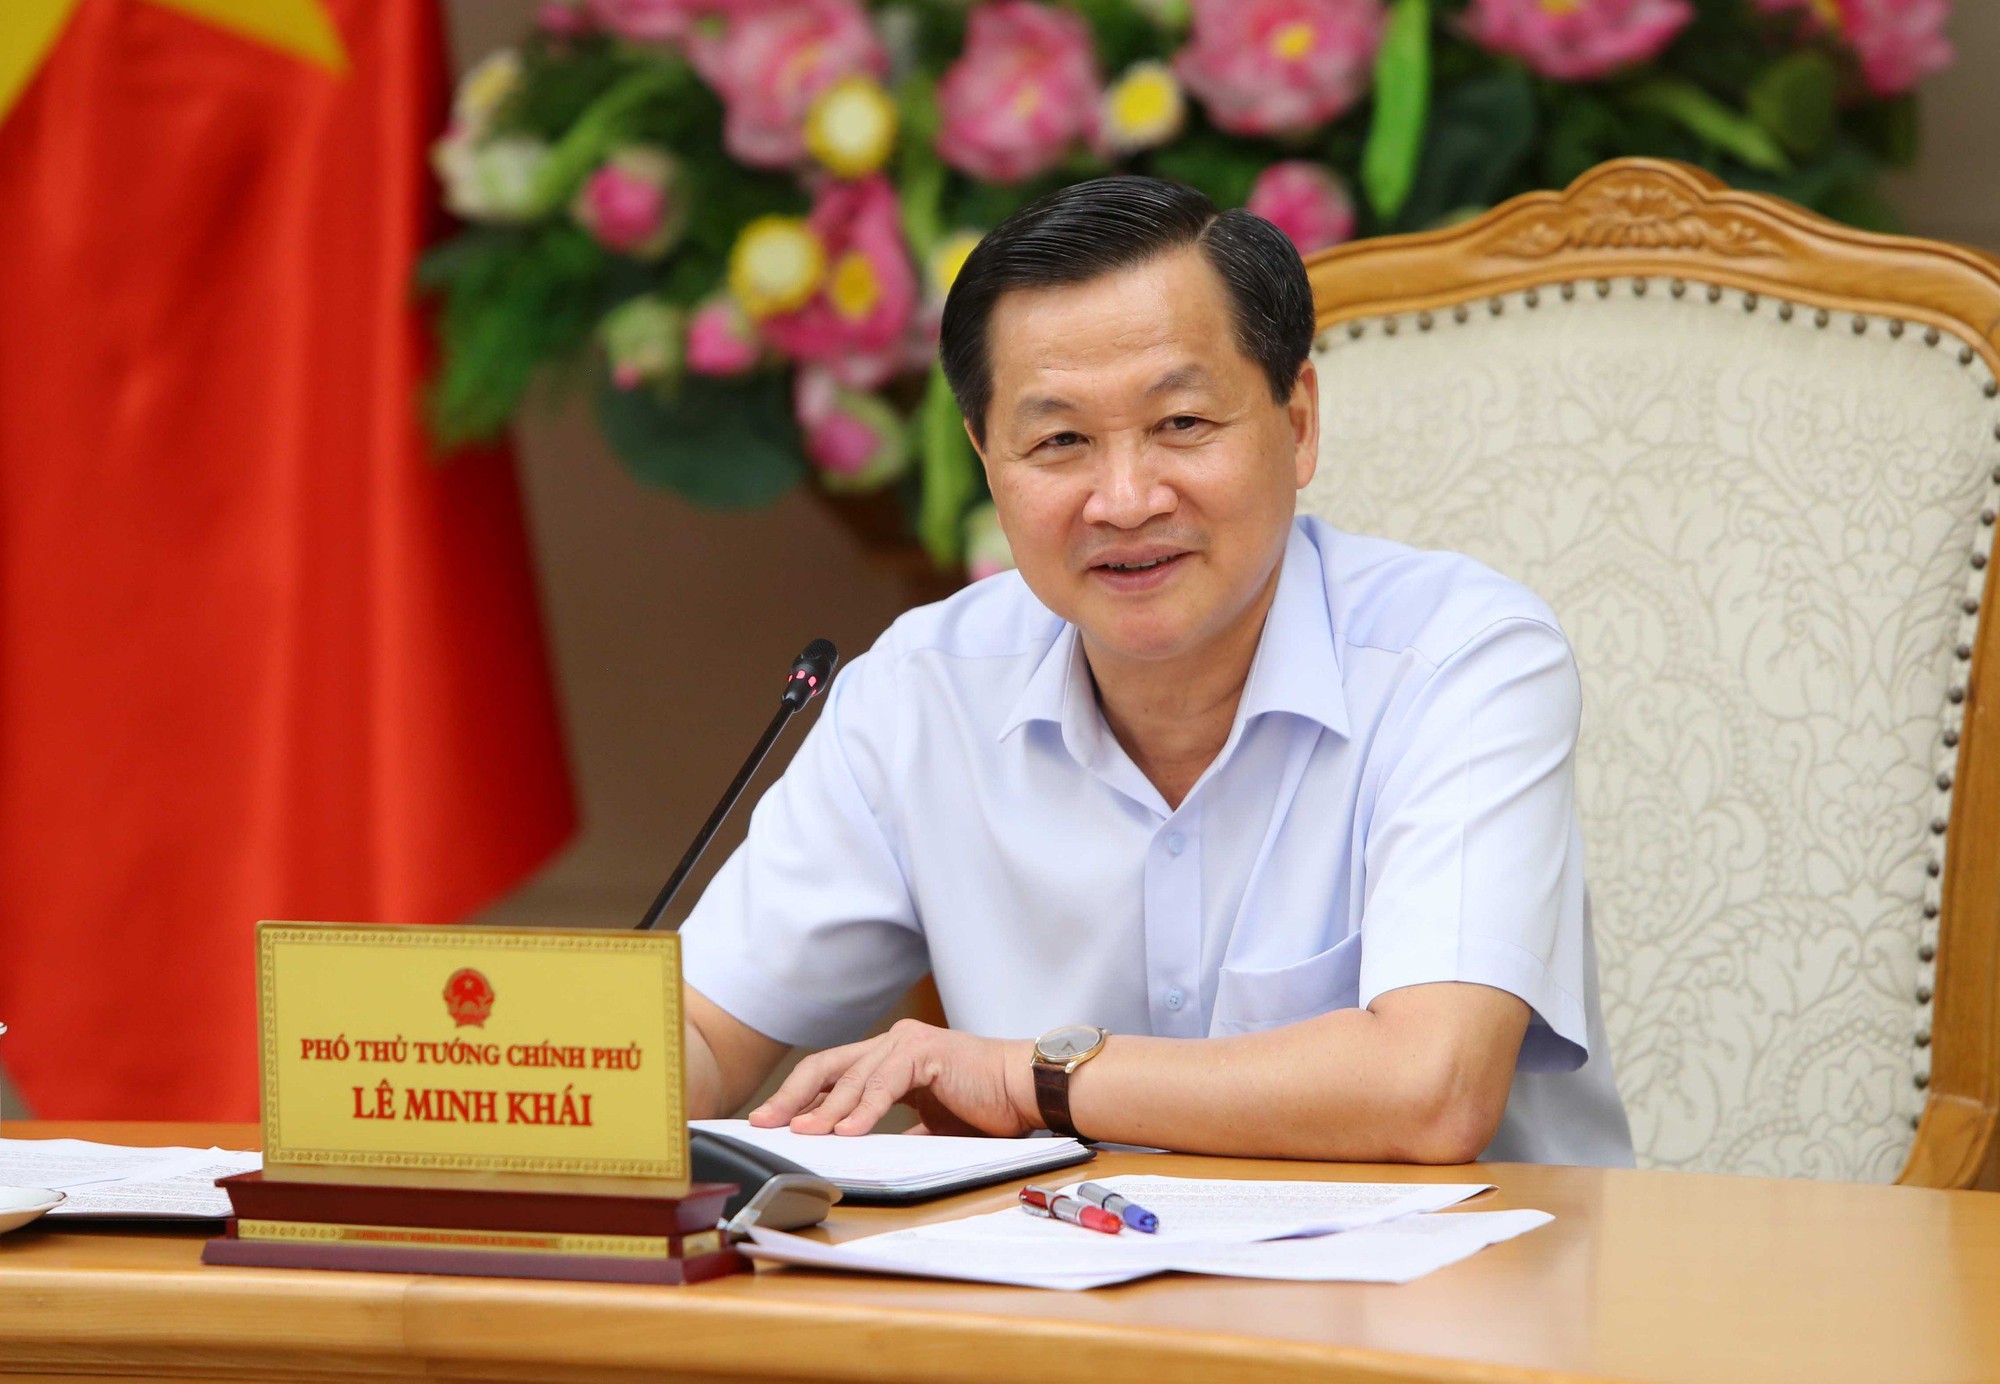 Phó Thủ tướng yêu cầu ứng kinh phí để chi trả tiền giải thưởng Hồ Chí Minh, giải thưởng Nhà nước - Ảnh 2.